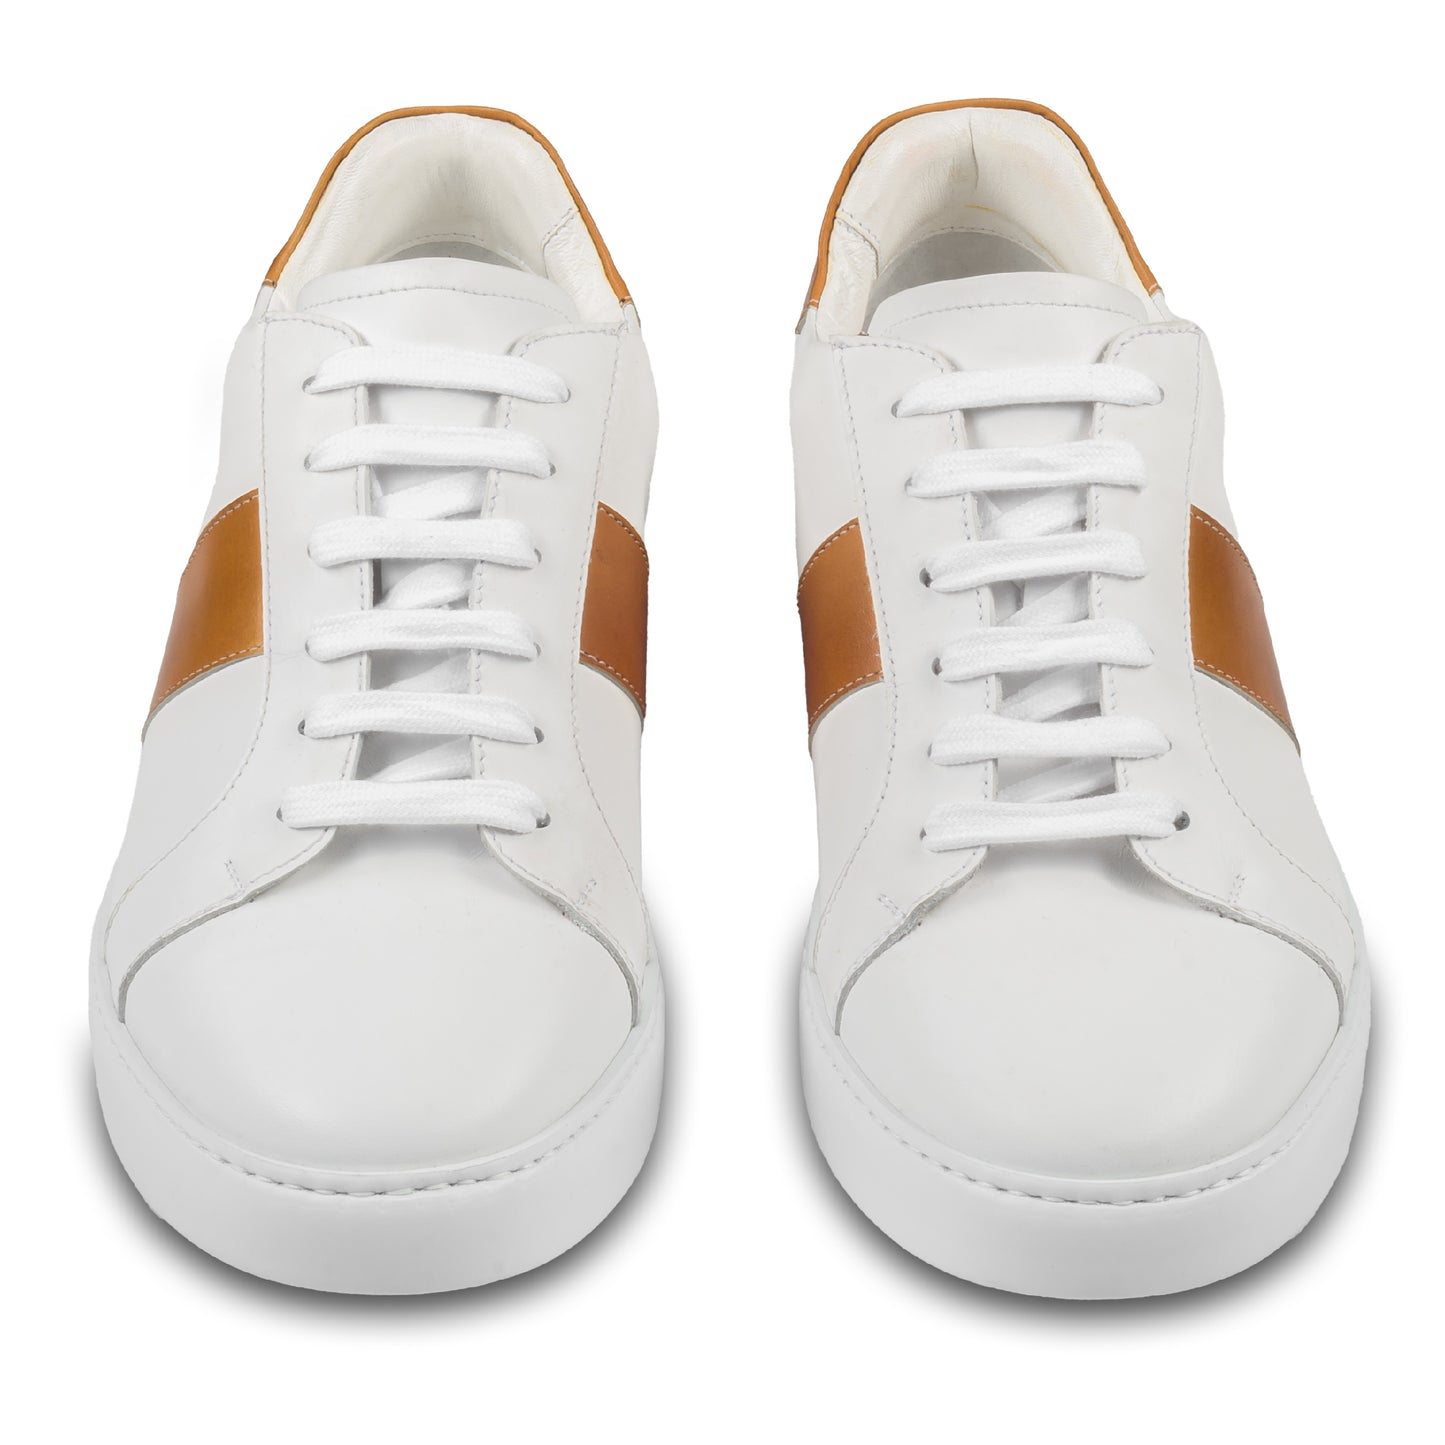 Brecos Herren Kalbsleder Sneaker in weiß mit cognak braun. Leichte, weiße Gummisohle. Handgefertigt in Italien. Paarweise Ansicht von vorne.  